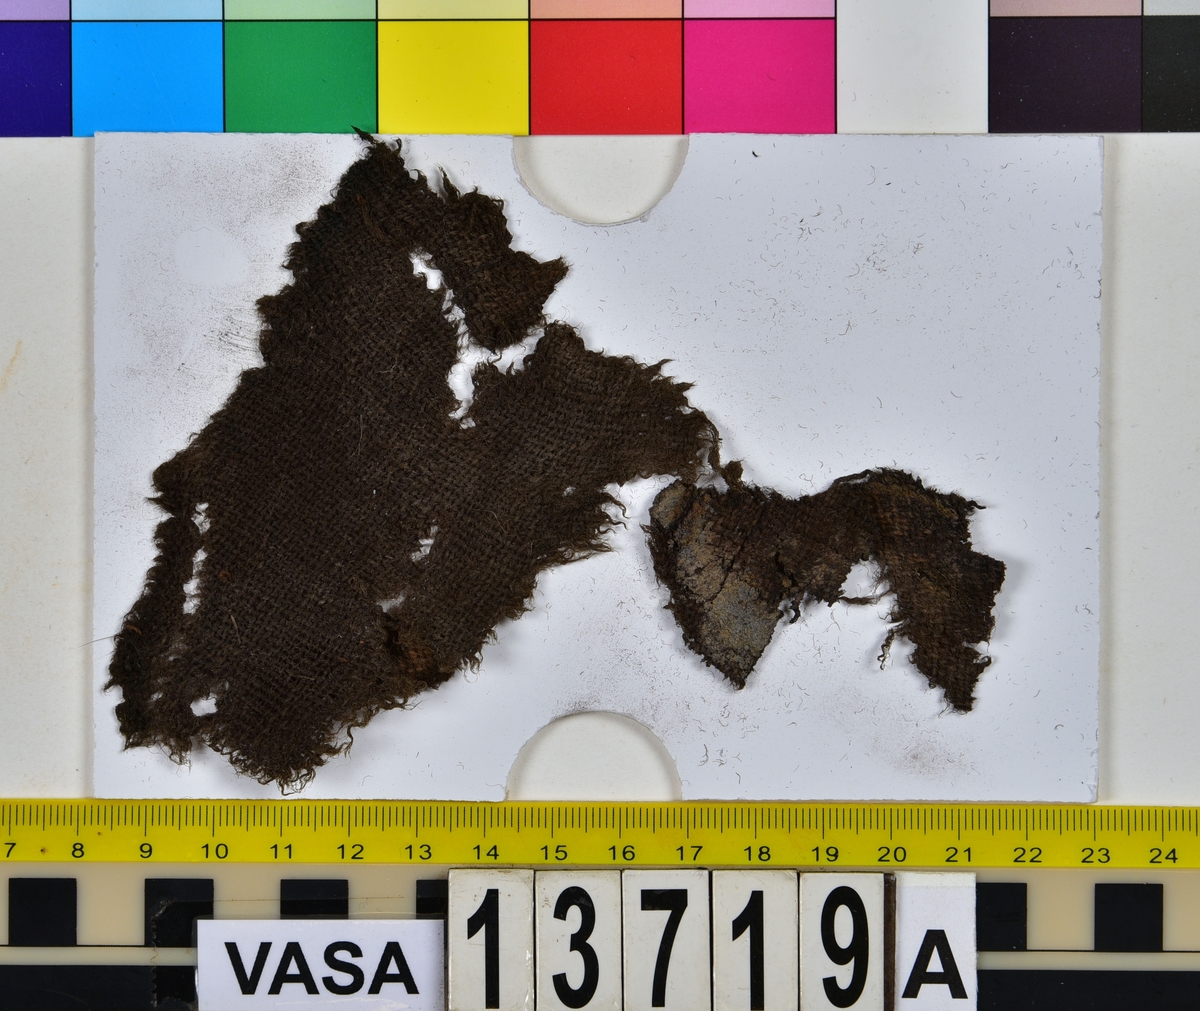 Textil.
33 textilfragment uppdelade på fyndnummer 13719a-c.
Fnr 13719a består av 5 fragment av ull vävda i tuskaft.
Fnr 13719b består av 14 fragment av ull vävda i tuskaft. Tyget har troligen varit valkat på ena sidan.
Fnr 13719c består av 14 fragment av ull vävda i tuskaft. Tyget har troligen varit valkat på ena sidan. De tre största fragmenten är kilformade. Fragmenten har flera originalkanter med spår av sömmar.